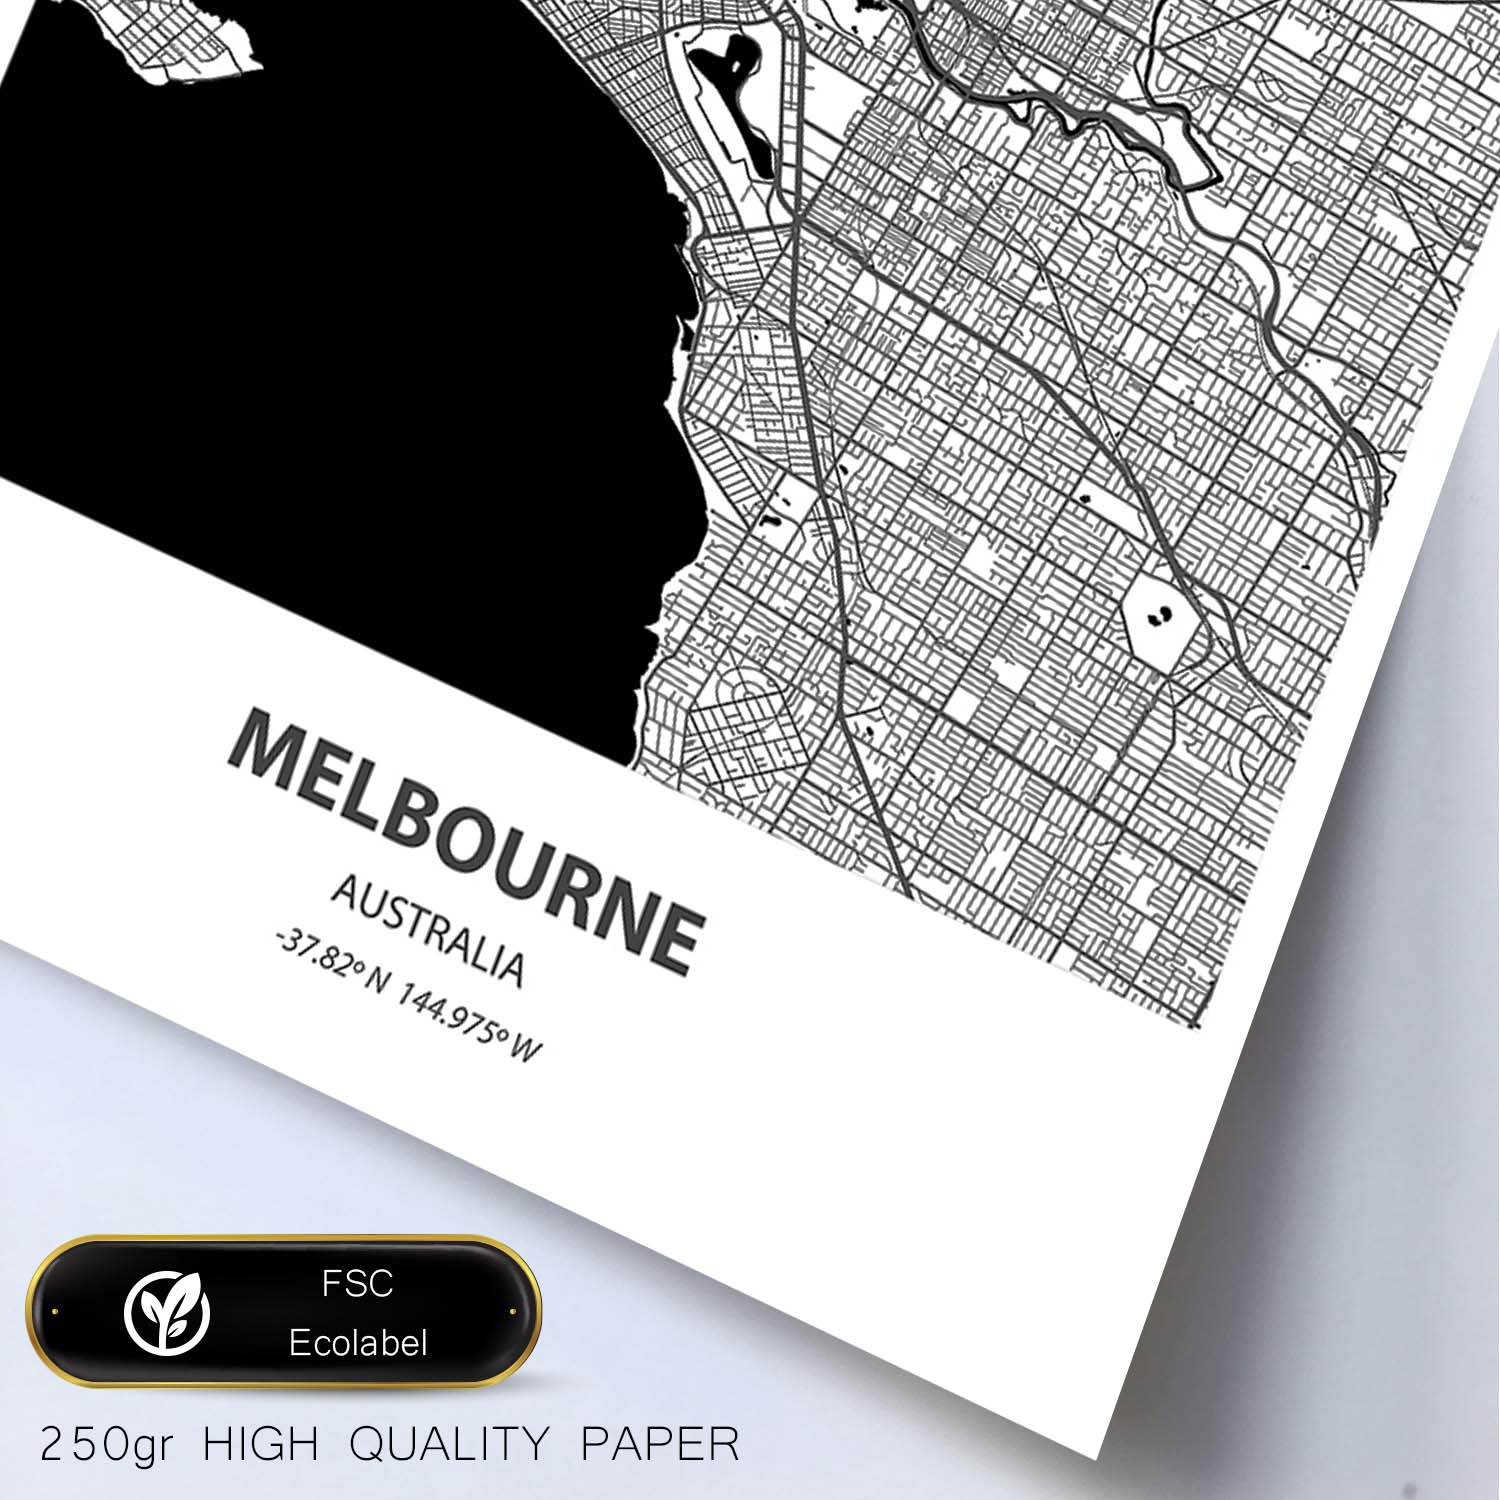 Poster con mapa de Melbourne - Australia. Láminas de ciudades de Australia con mares y ríos en color negro.-Artwork-Nacnic-Nacnic Estudio SL